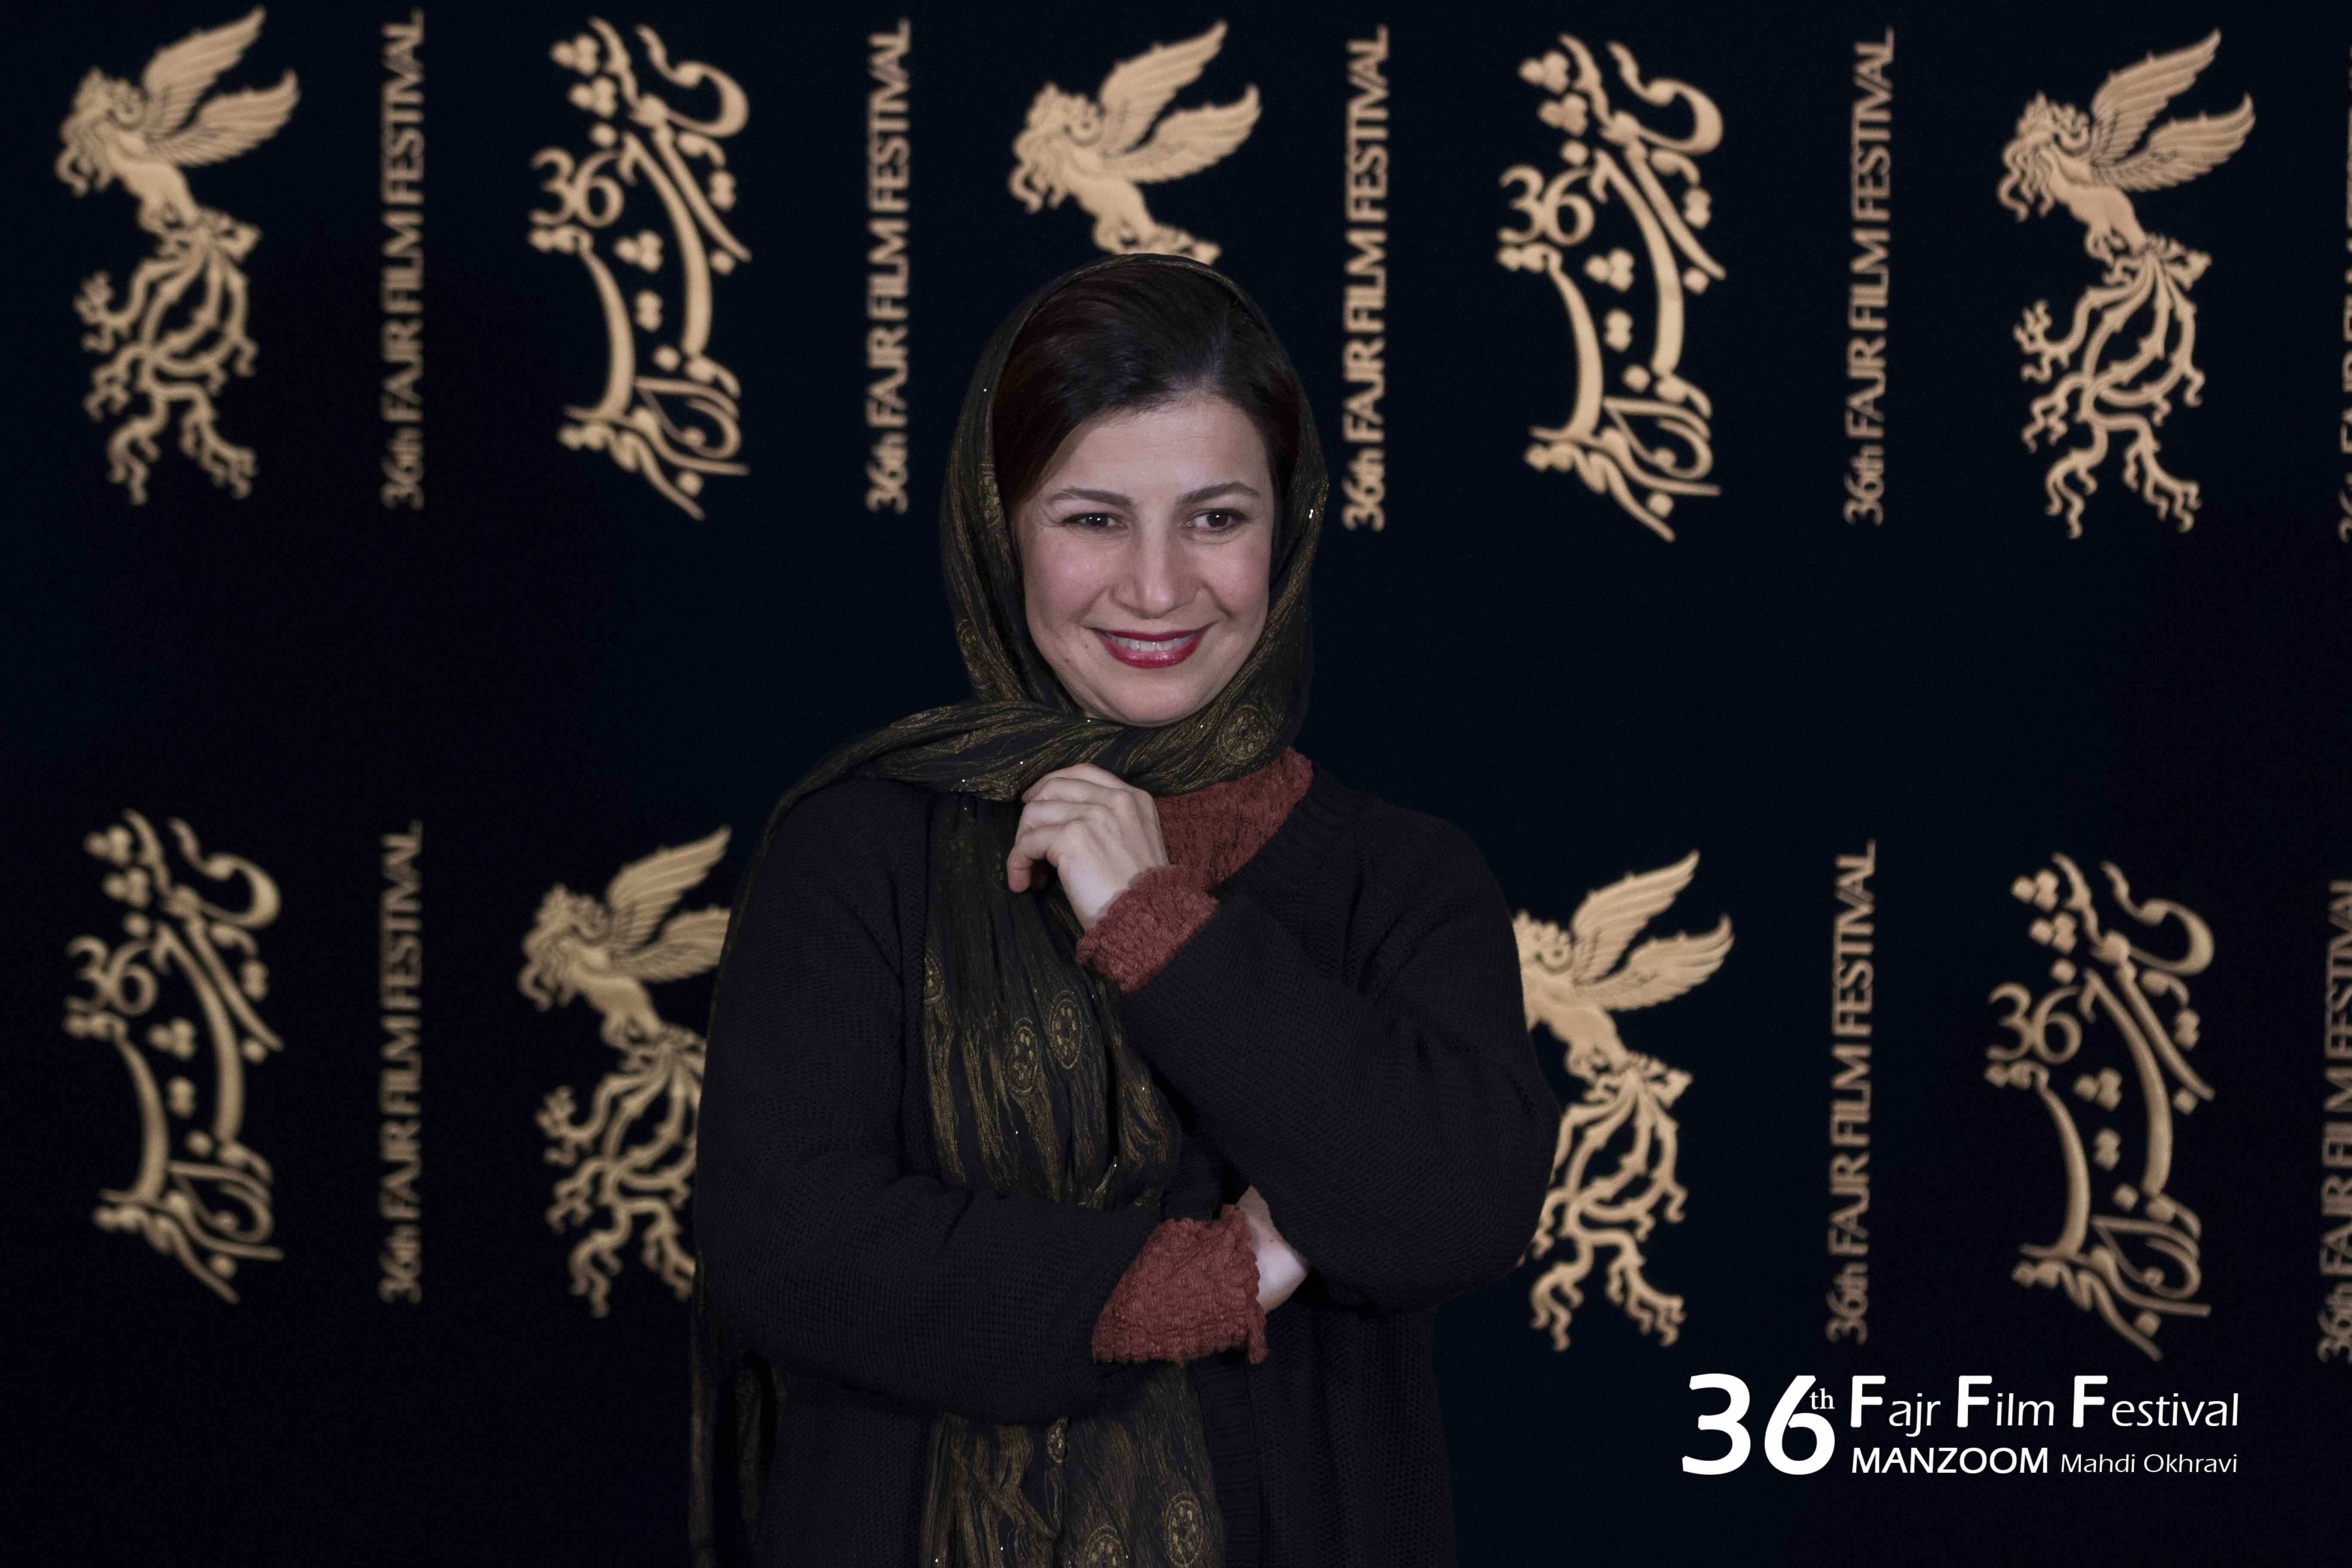 لیلی رشیدی در جشنواره فیلم سینمایی عرق سرد